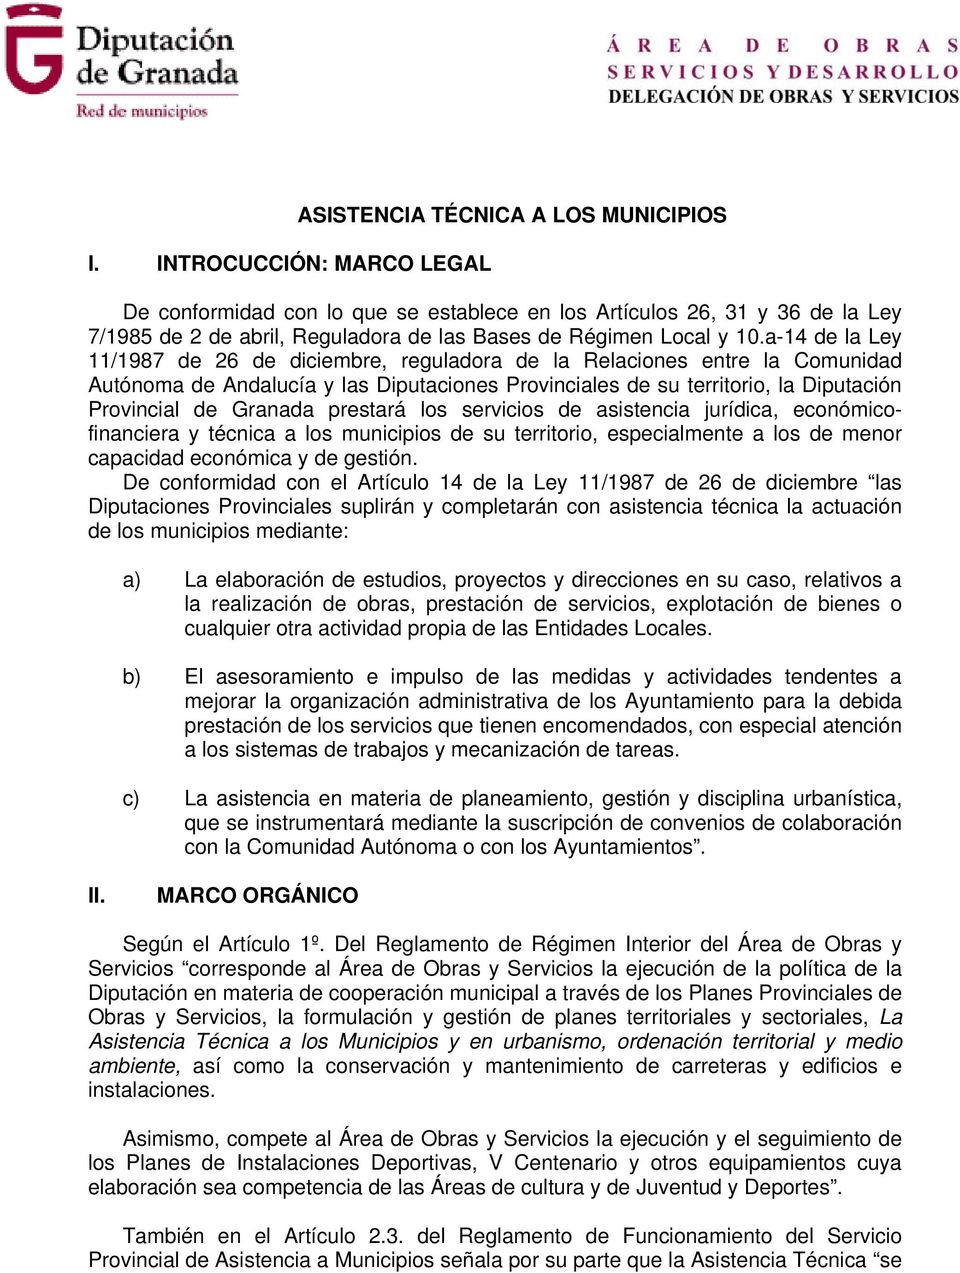 a-14 de la Ley 11/1987 de 26 de diciembre, reguladora de la Relaciones entre la Comunidad Autónoma de Andalucía y las Diputaciones Provinciales de su territorio, la Diputación Provincial de Granada